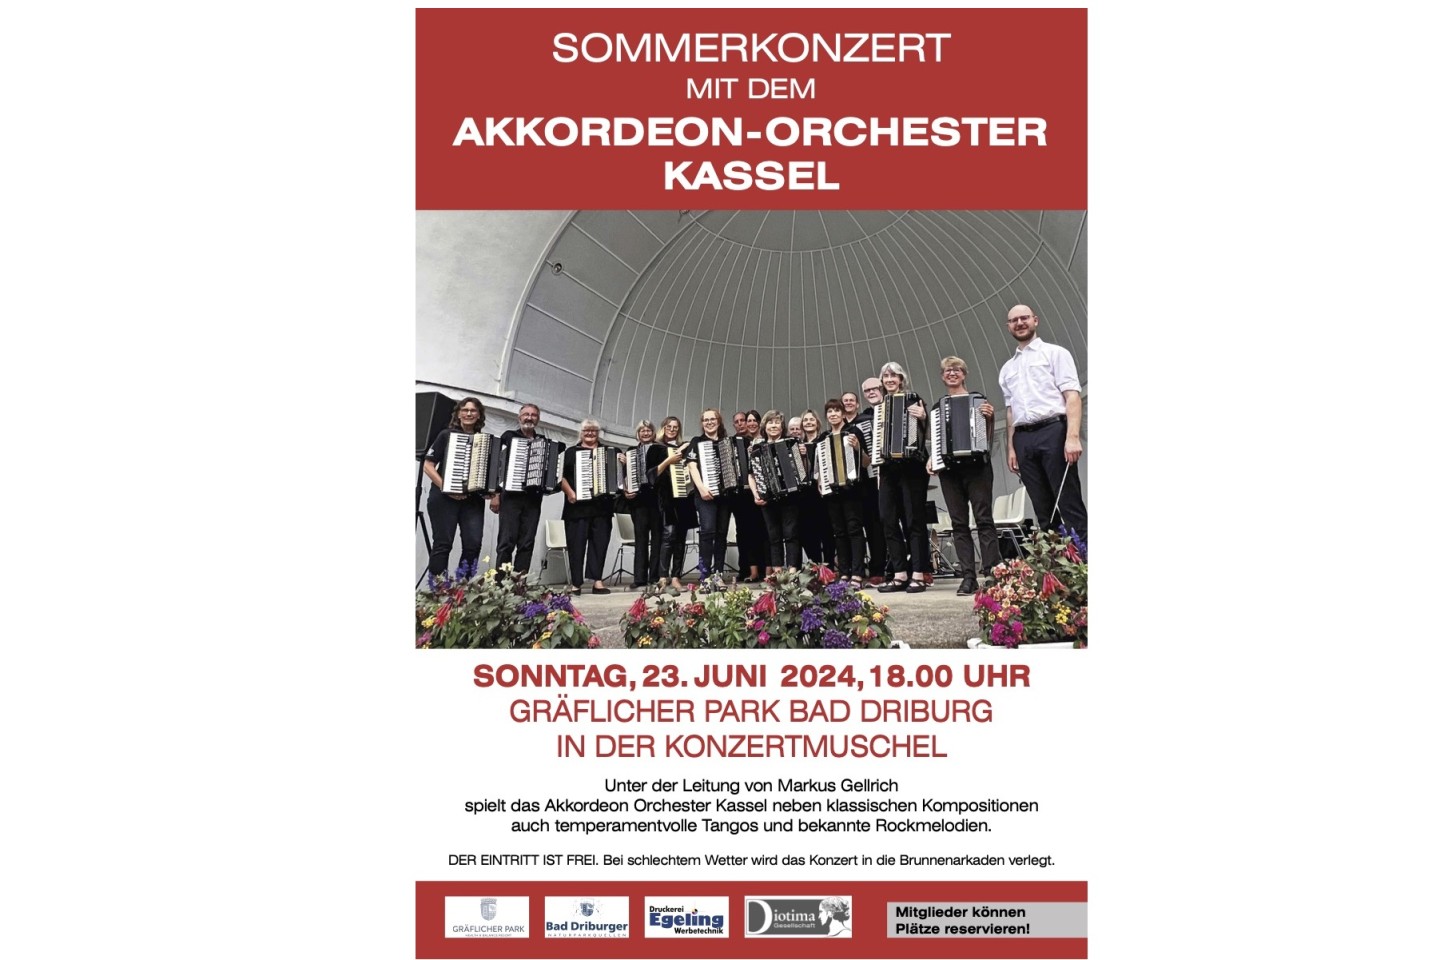 Sommerkonzert mit dem Akkordeon-Orchester Kassel 